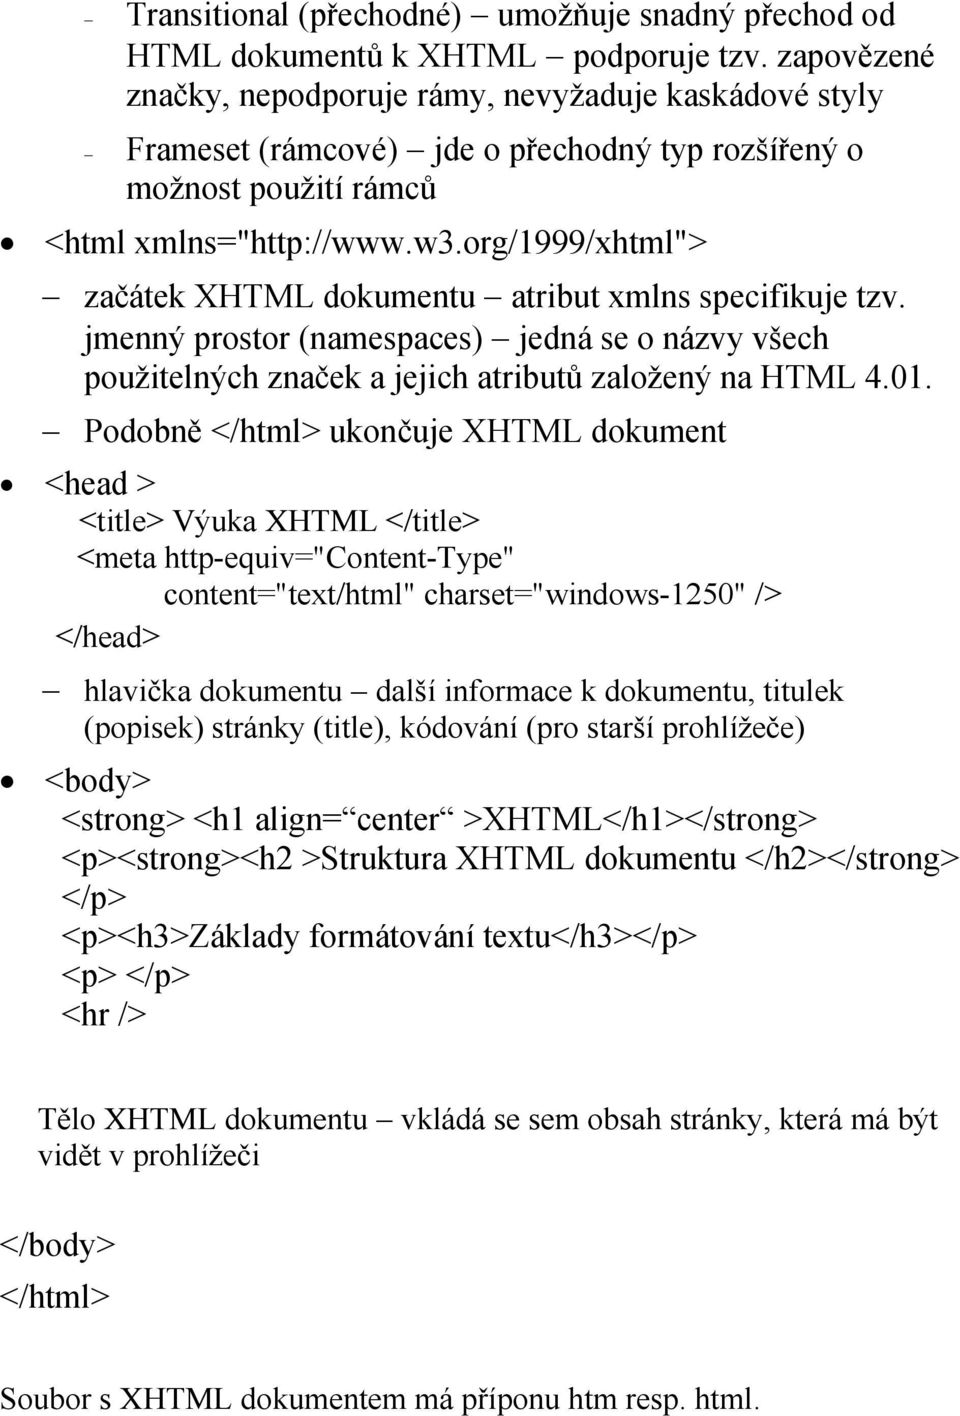 org/1999/xhtml"> začátek XHTML dokumentu atribut xmlns specifikuje tzv. jmenný prostor (namespaces) jedná se o názvy všech použitelných značek a jejich atributů založený na HTML 4.01.